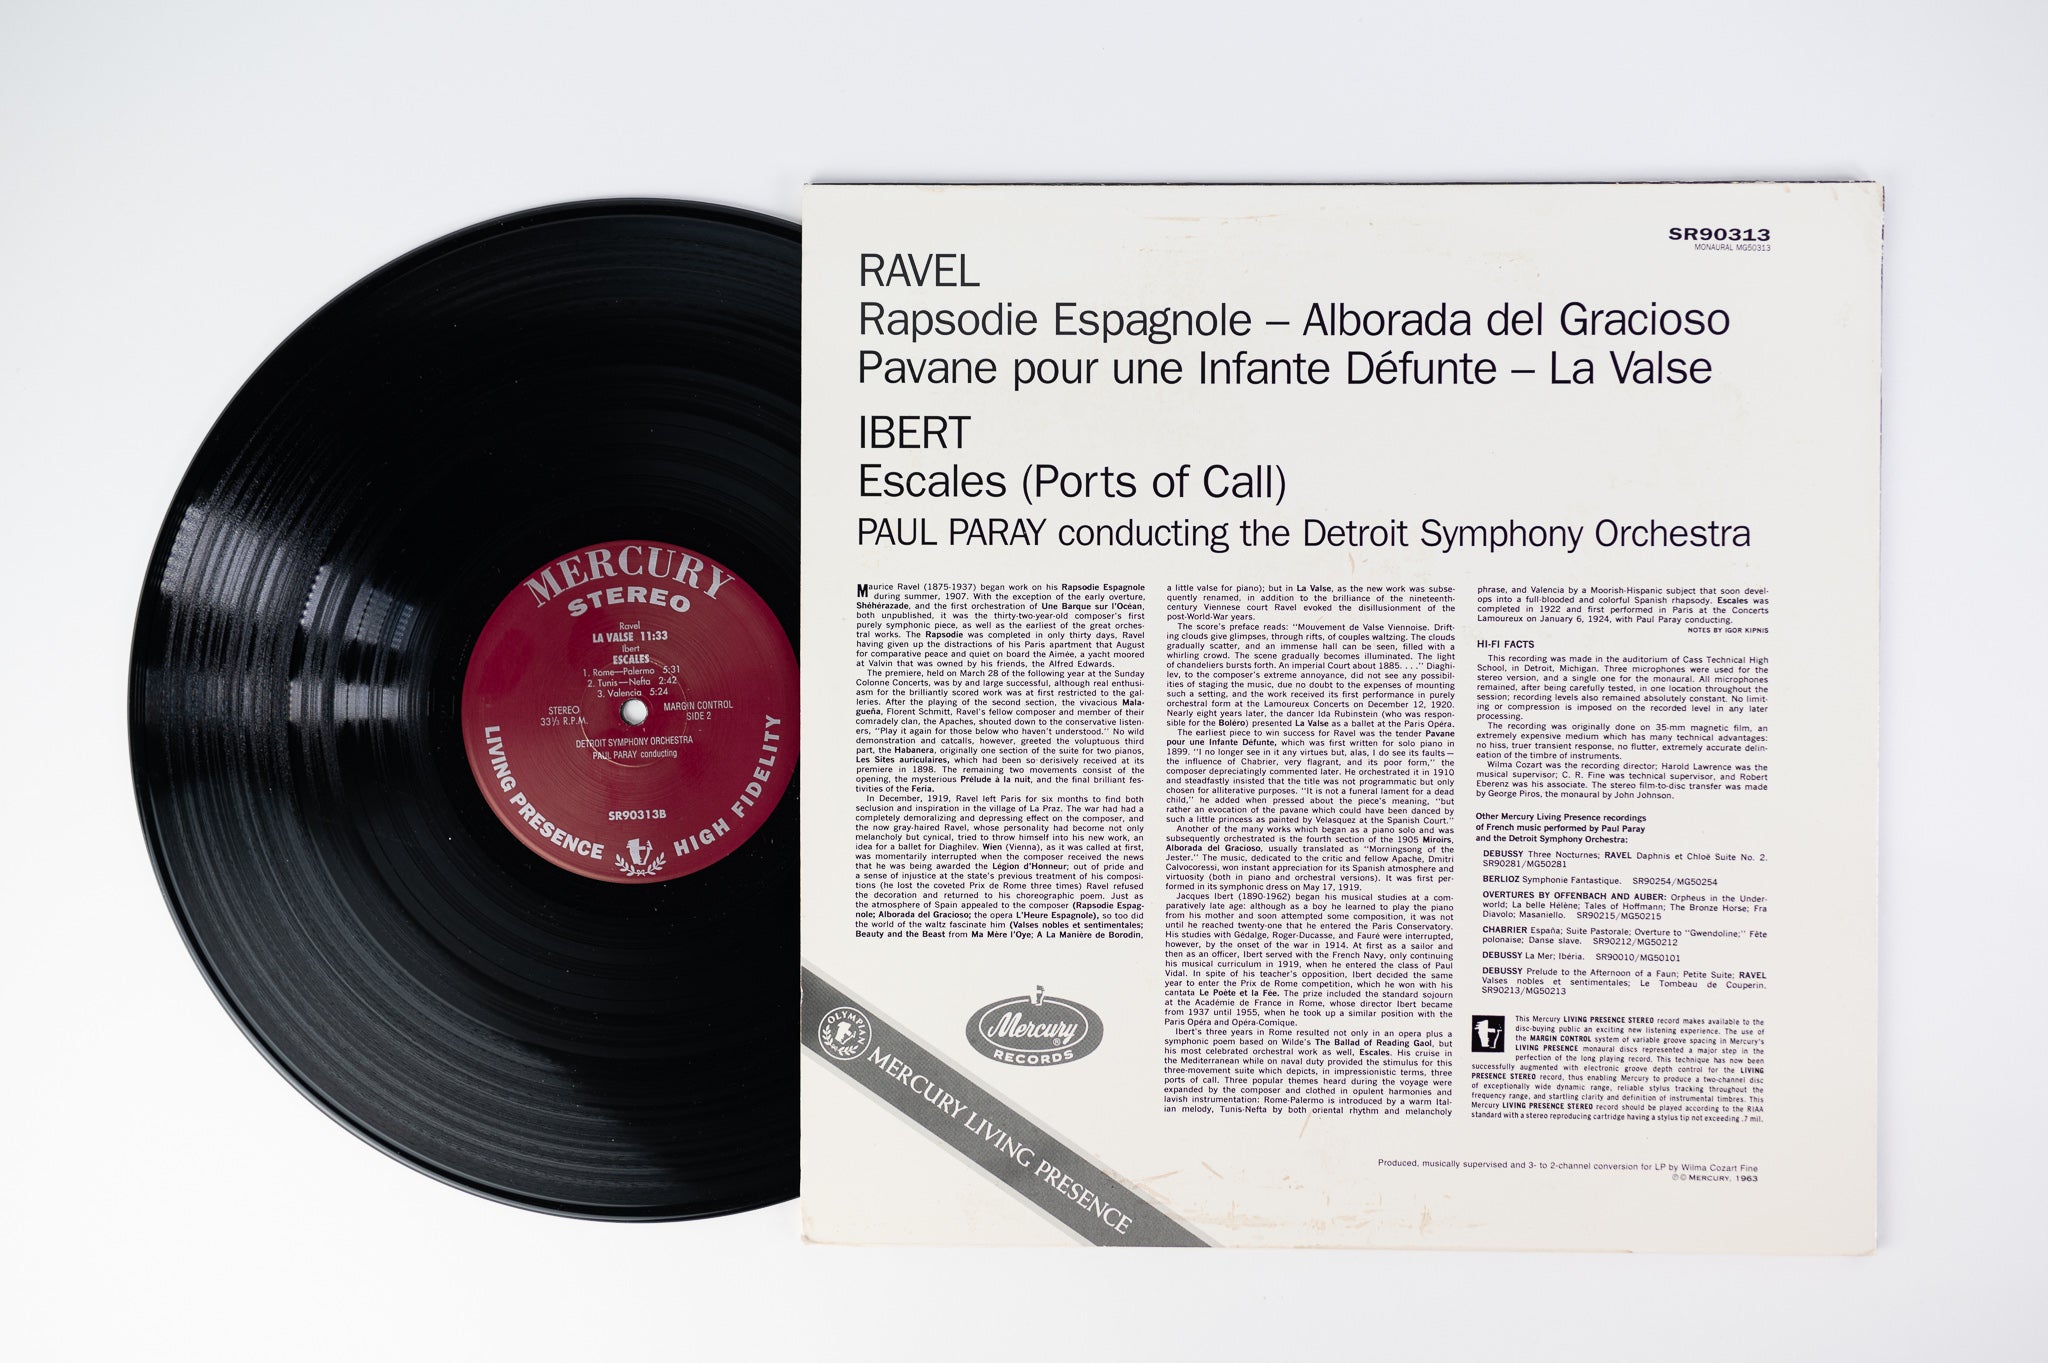 Ravel, Ibert, Detroit Symphony, Paul Paray - Rapsodie Espagnole, La Valse, Pavane Pour Une Infante Défunte, Alborada Del Gracioso - Escales (Ports Of Call) on Classic Records